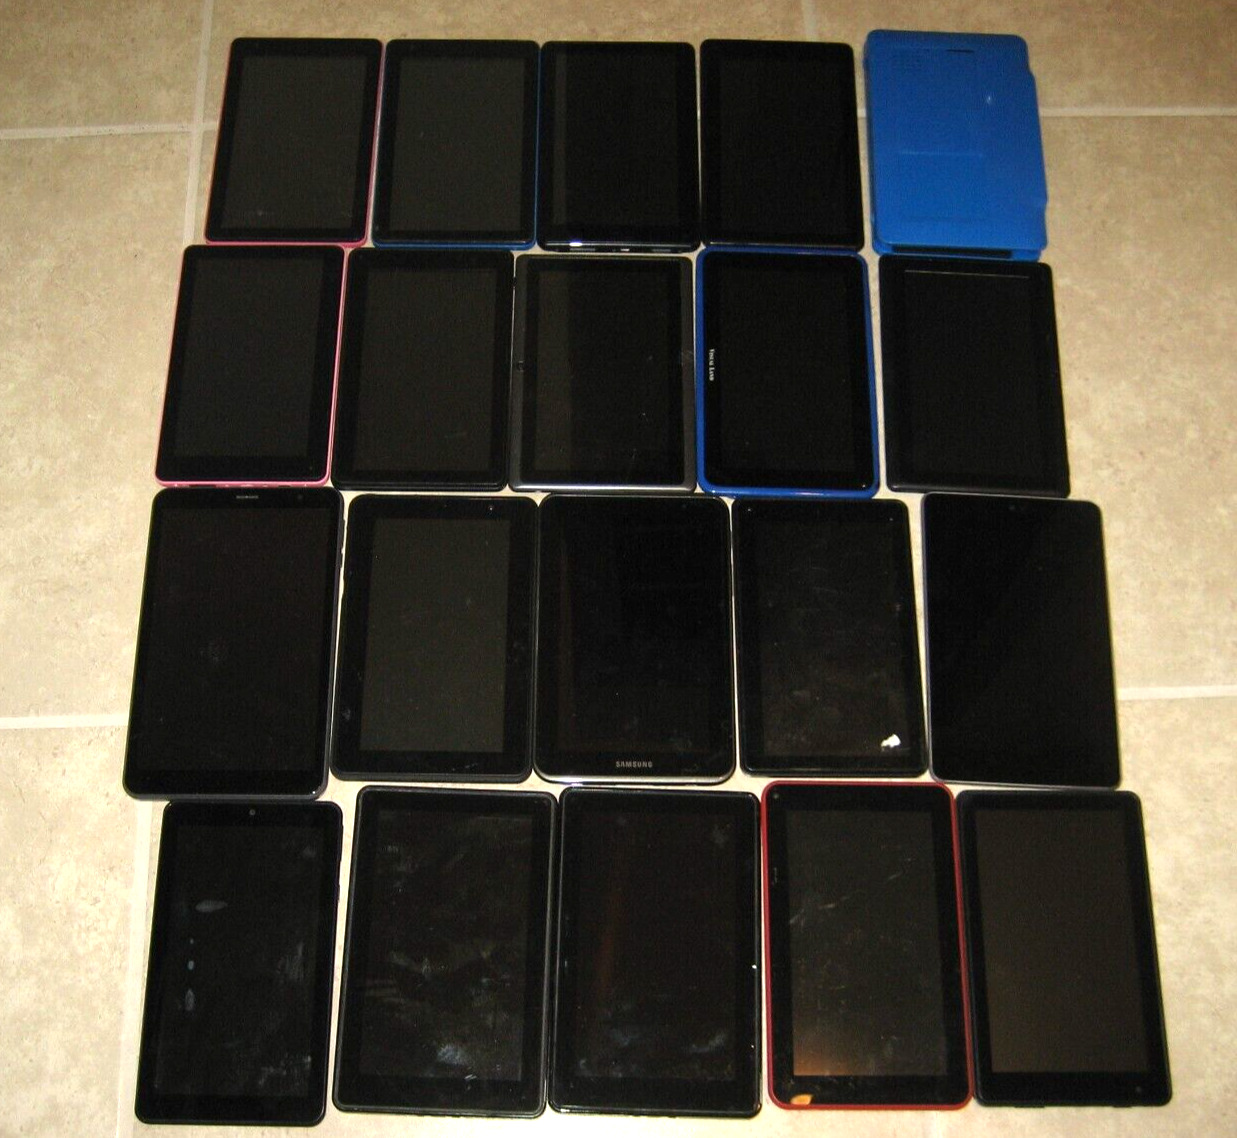 Lot of 20 Mixed Tablets - RGA, Nook, Amazon, Samsung, Nexus, etc. - Untested